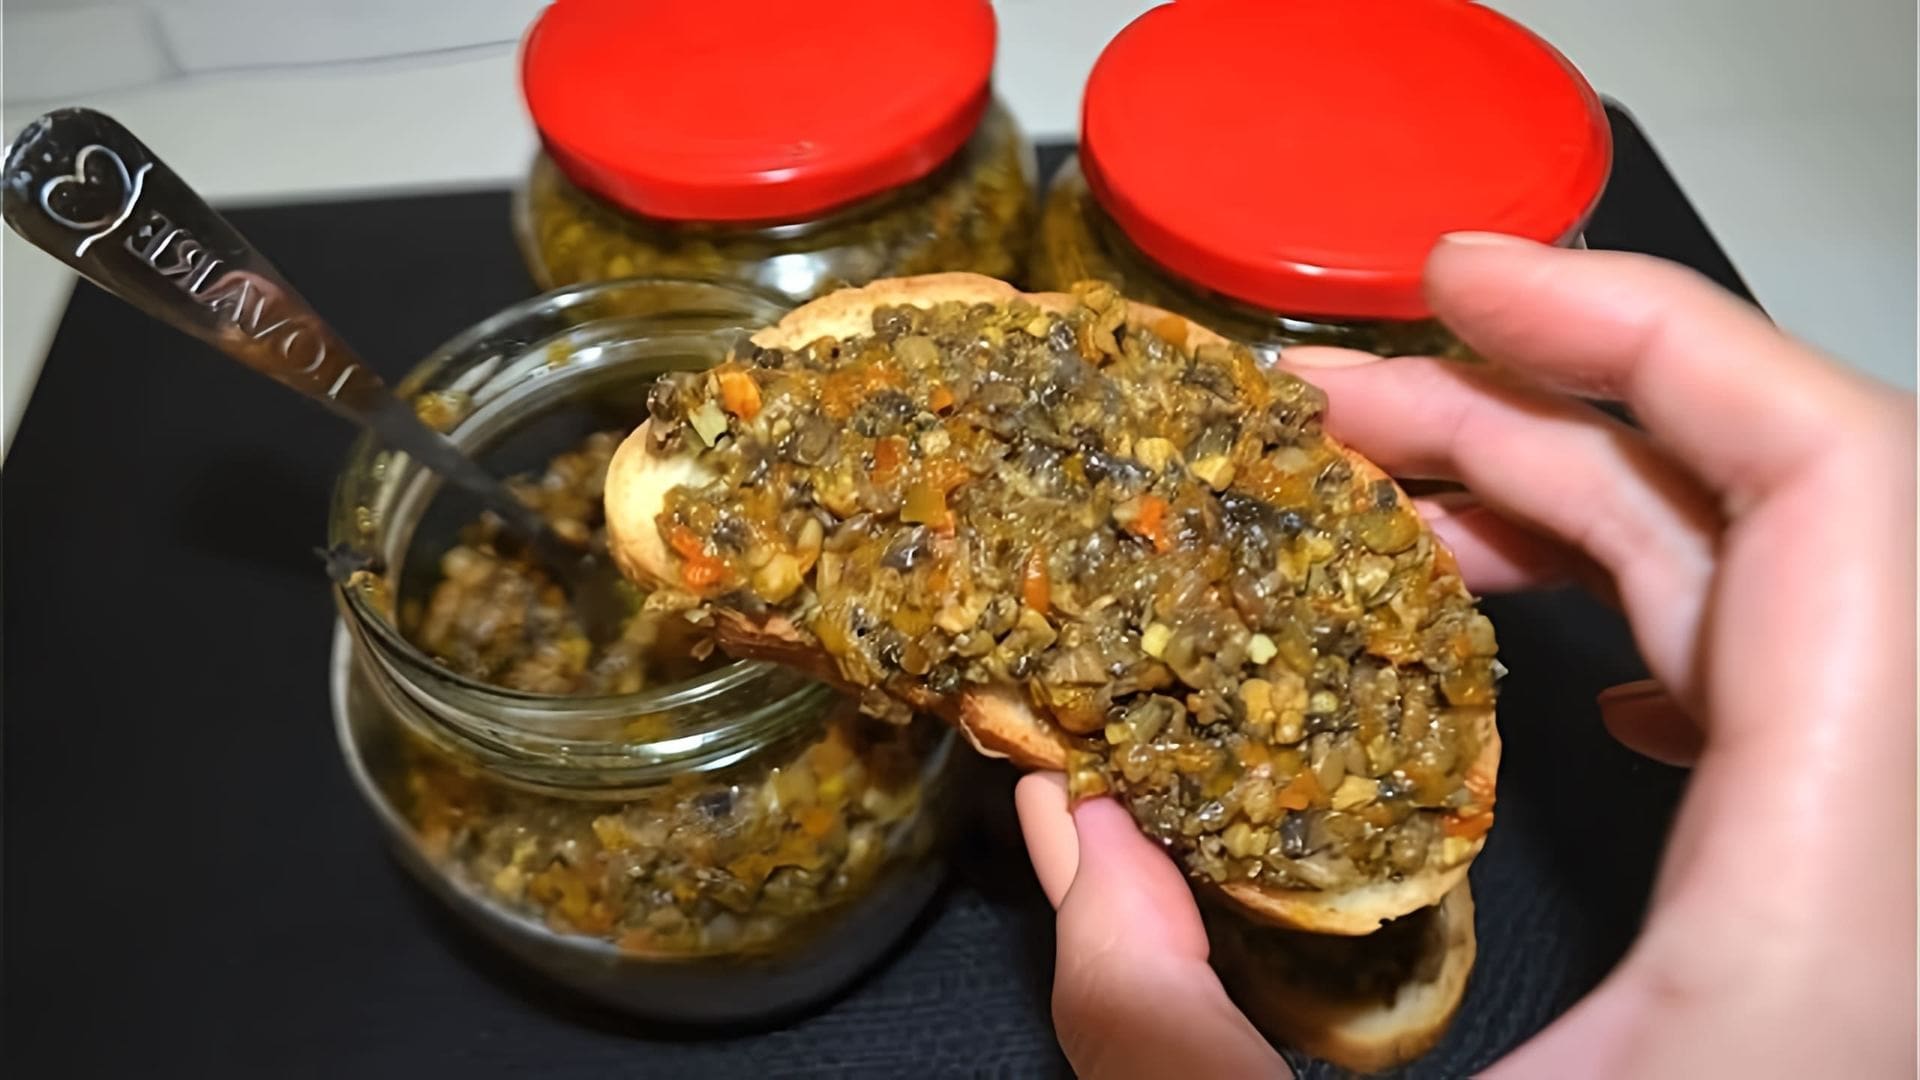 Видео как приготовить домашнюю грибную паштет или "грибную икру", которая описывается как невероятно вкусное угощение